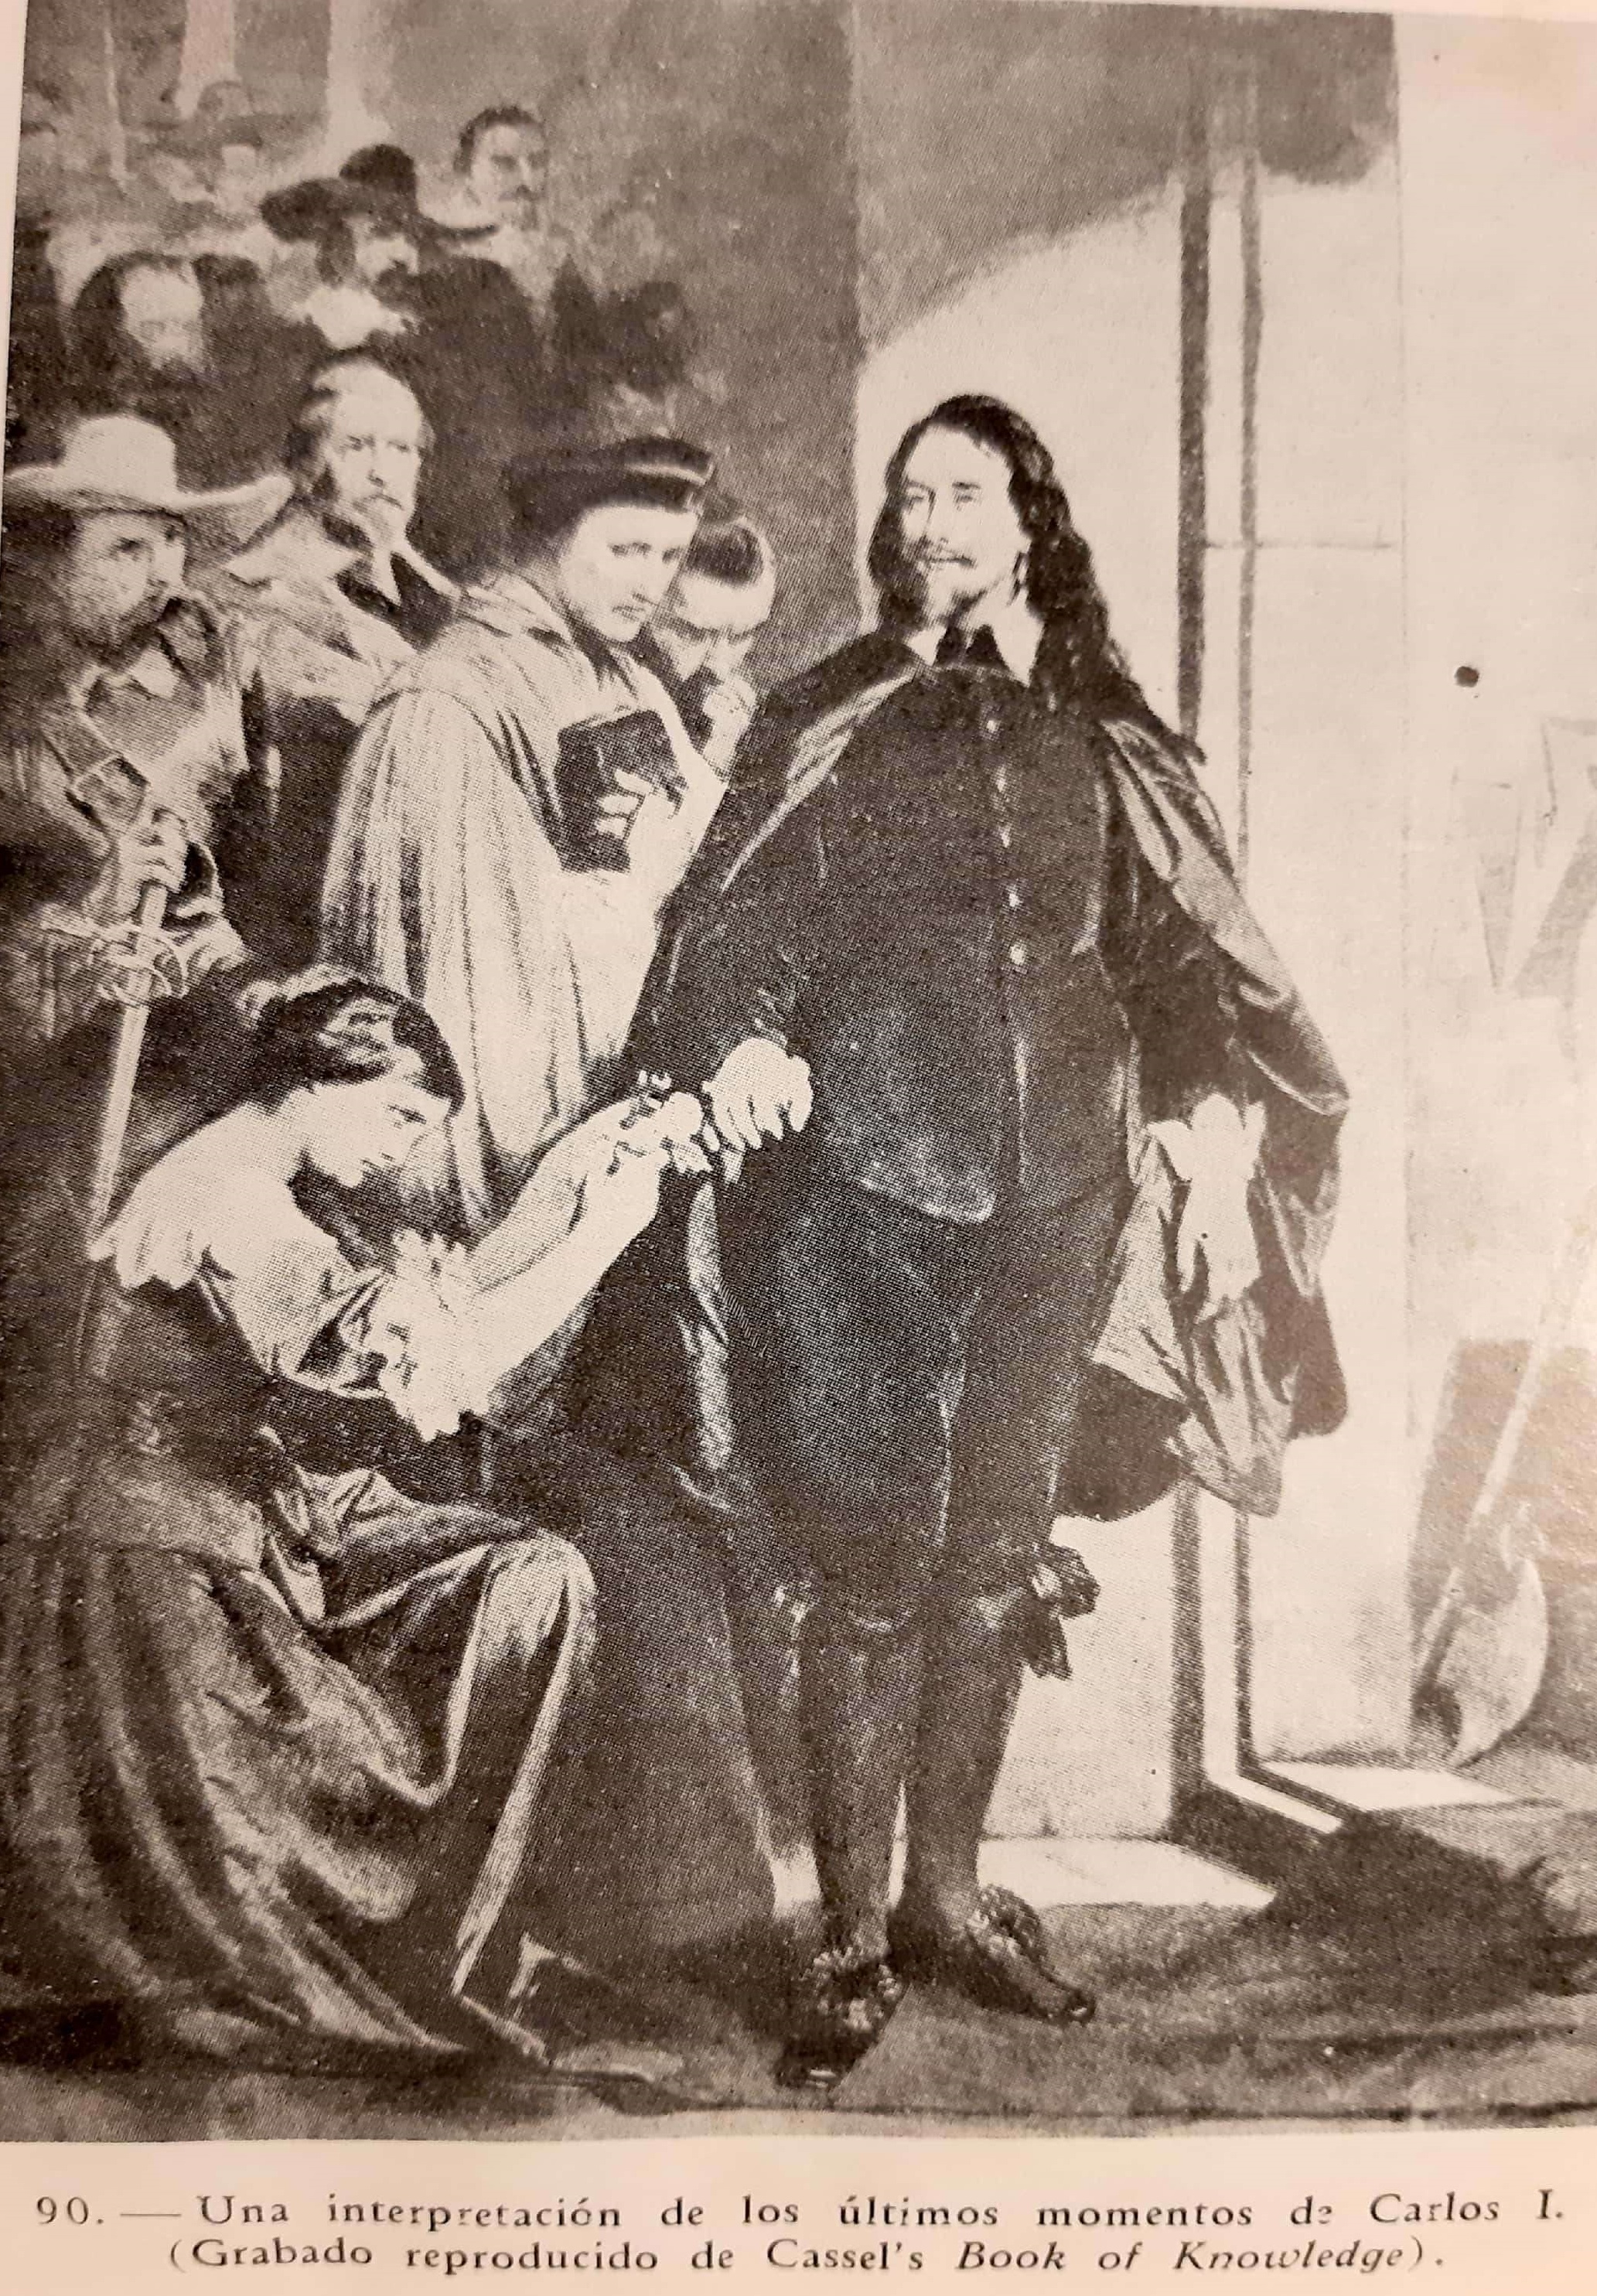 Charles I quelques minutes avant son exécution en 1649. Tiré de Cromwell - Lord Protecteur d'Angleterre, par E. Momigliano.